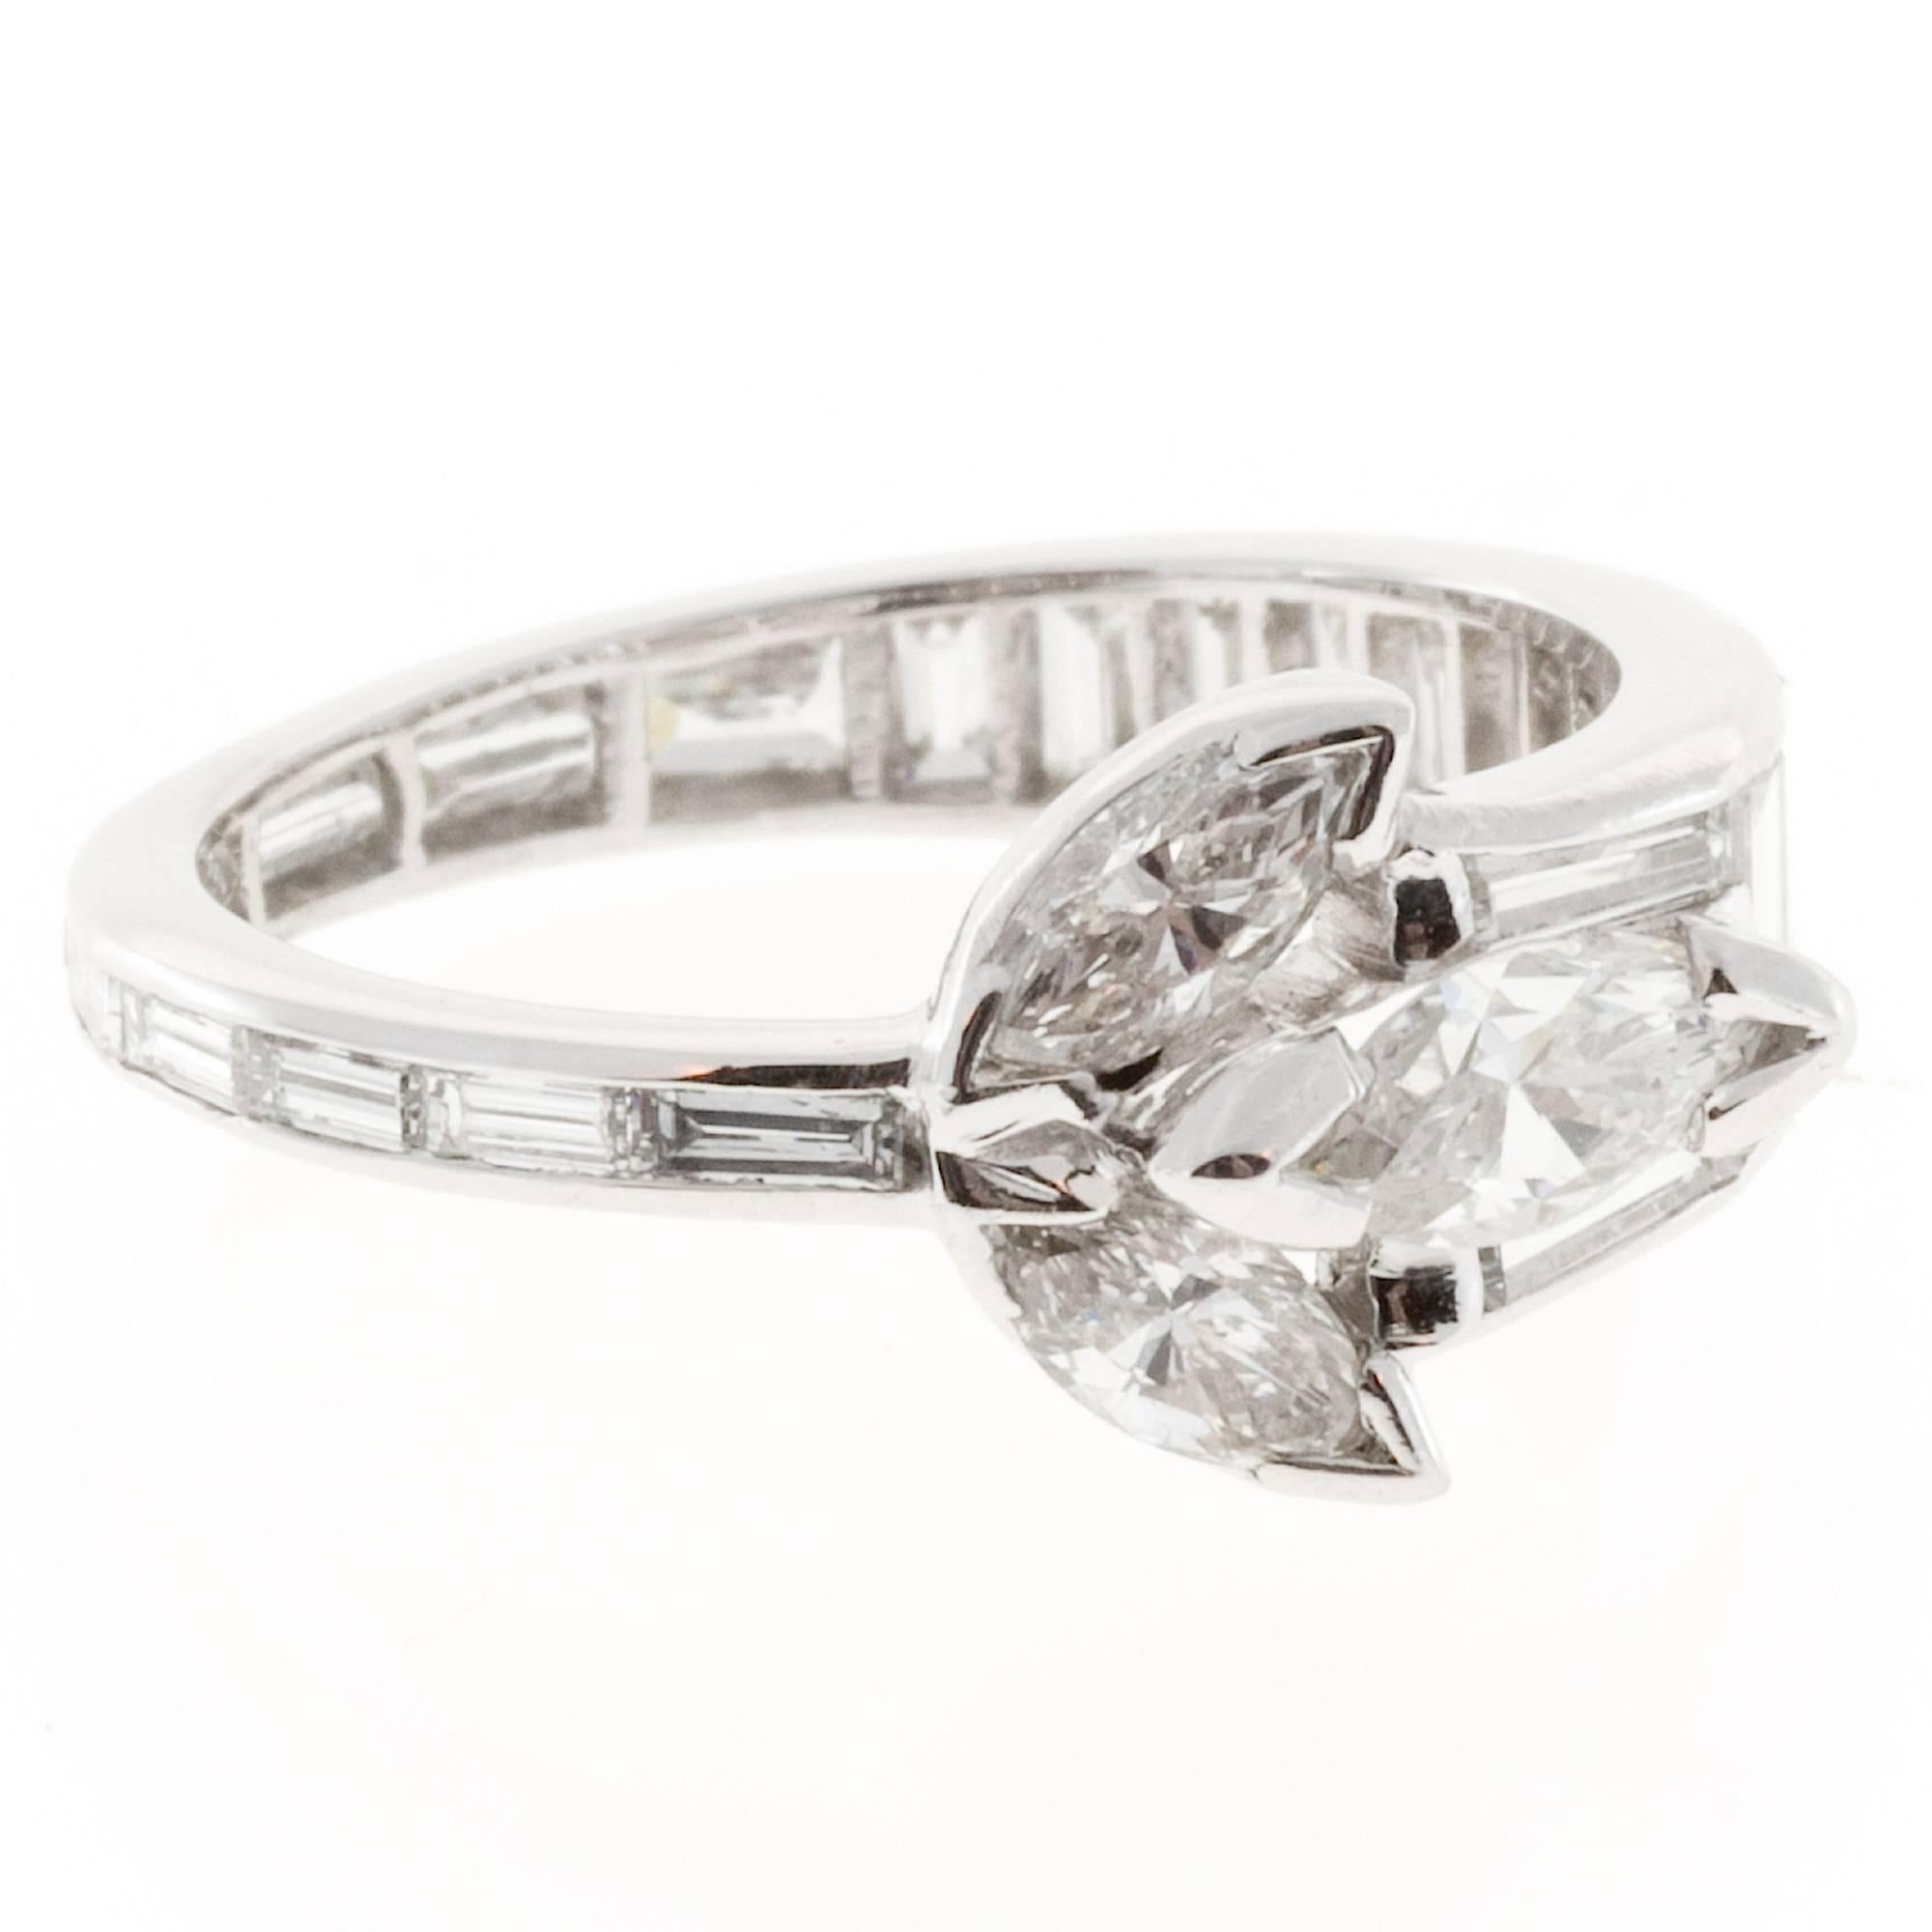 1.35 Carat Marquise Baguette Diamond Platinum Ring